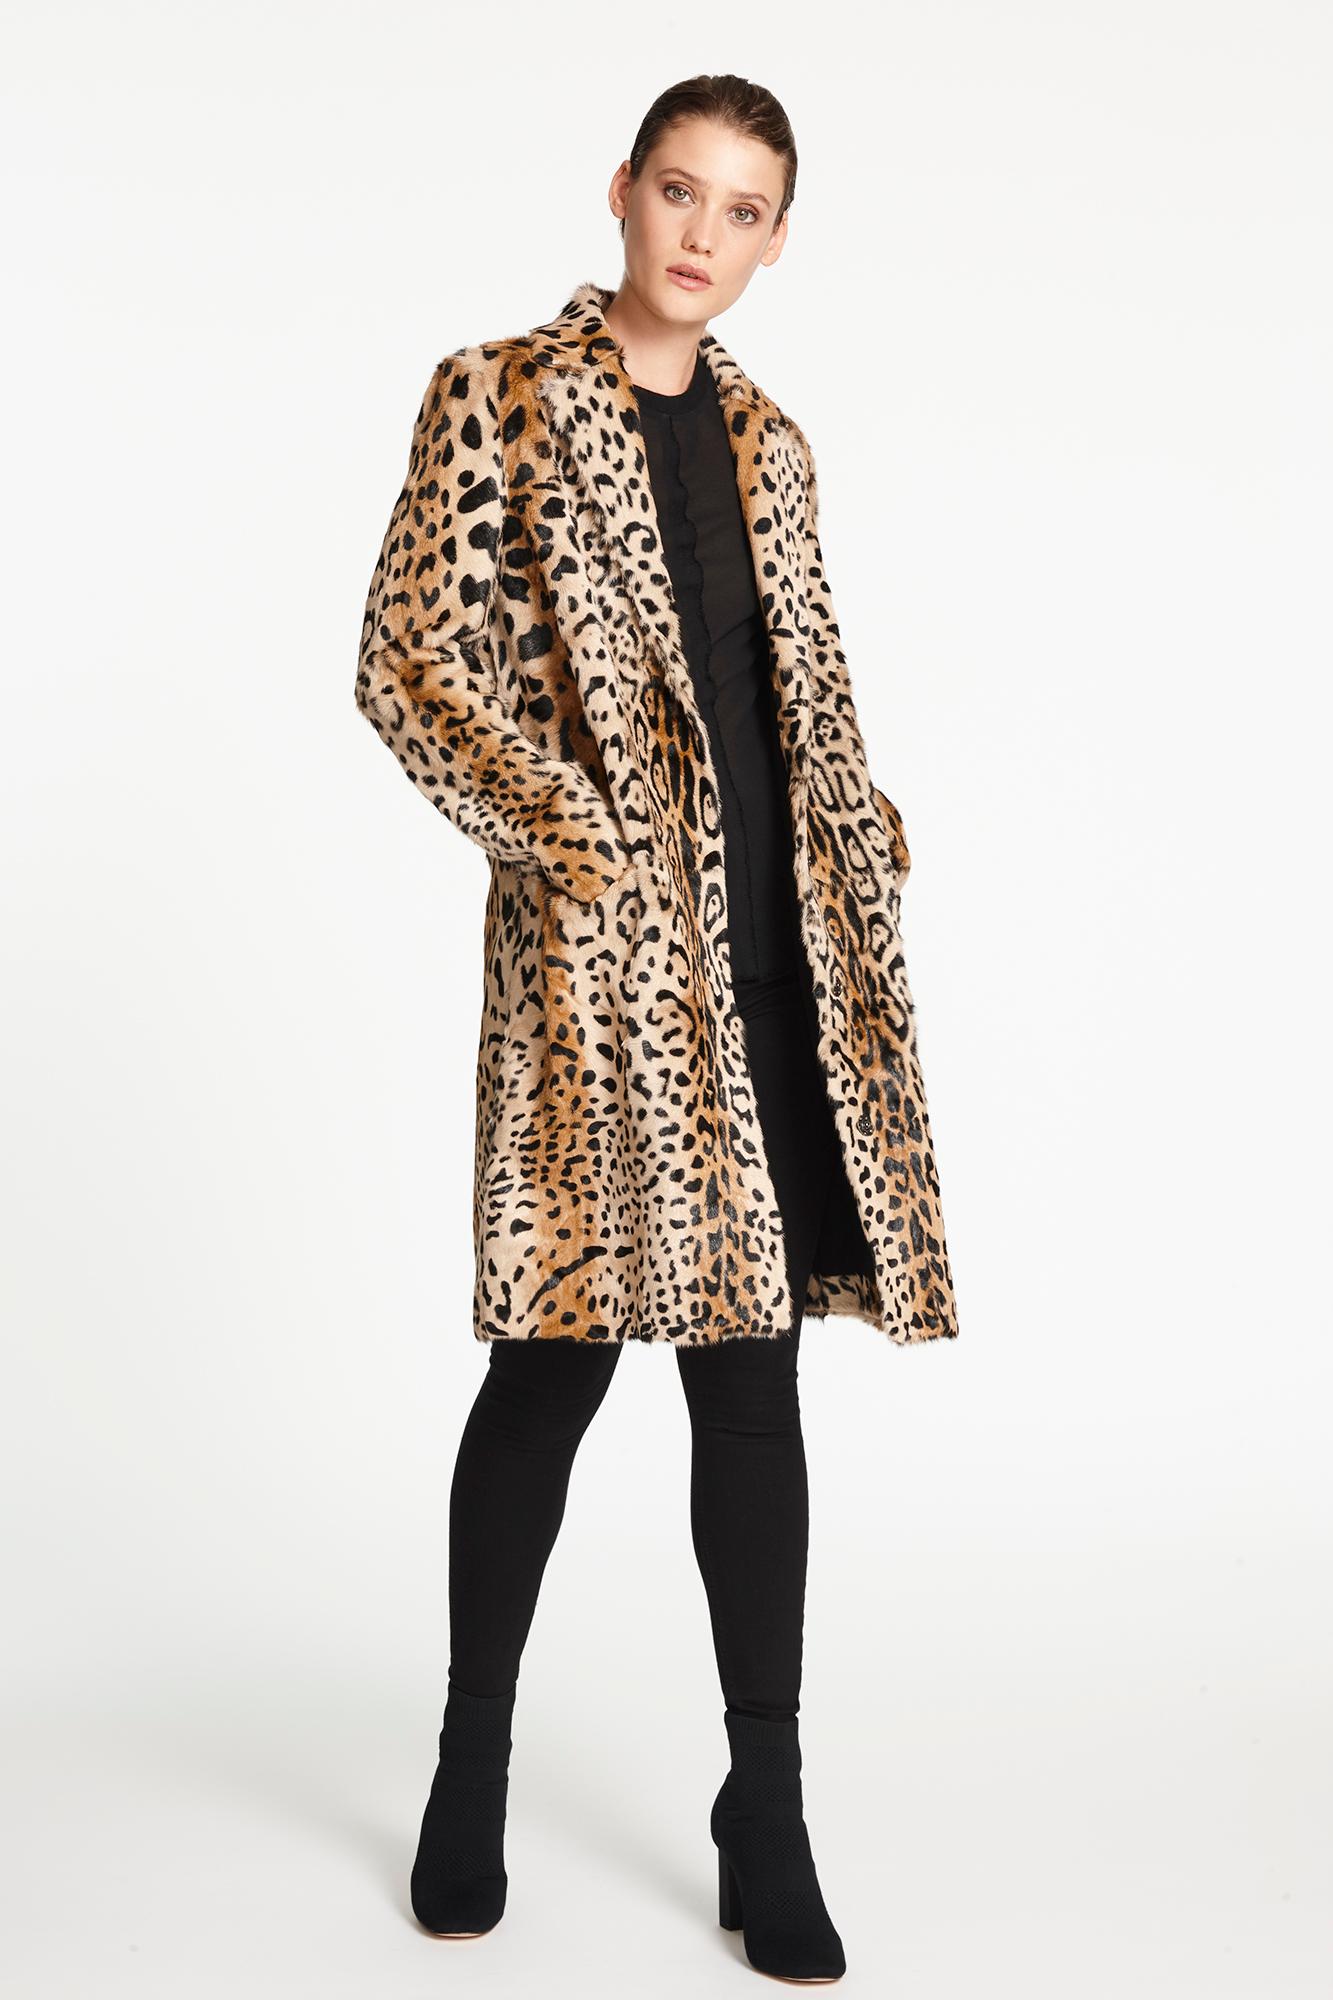 Verheyen London Leopard Print Coat in Natural Goat Hair Fur UK 10 - Brand New  1